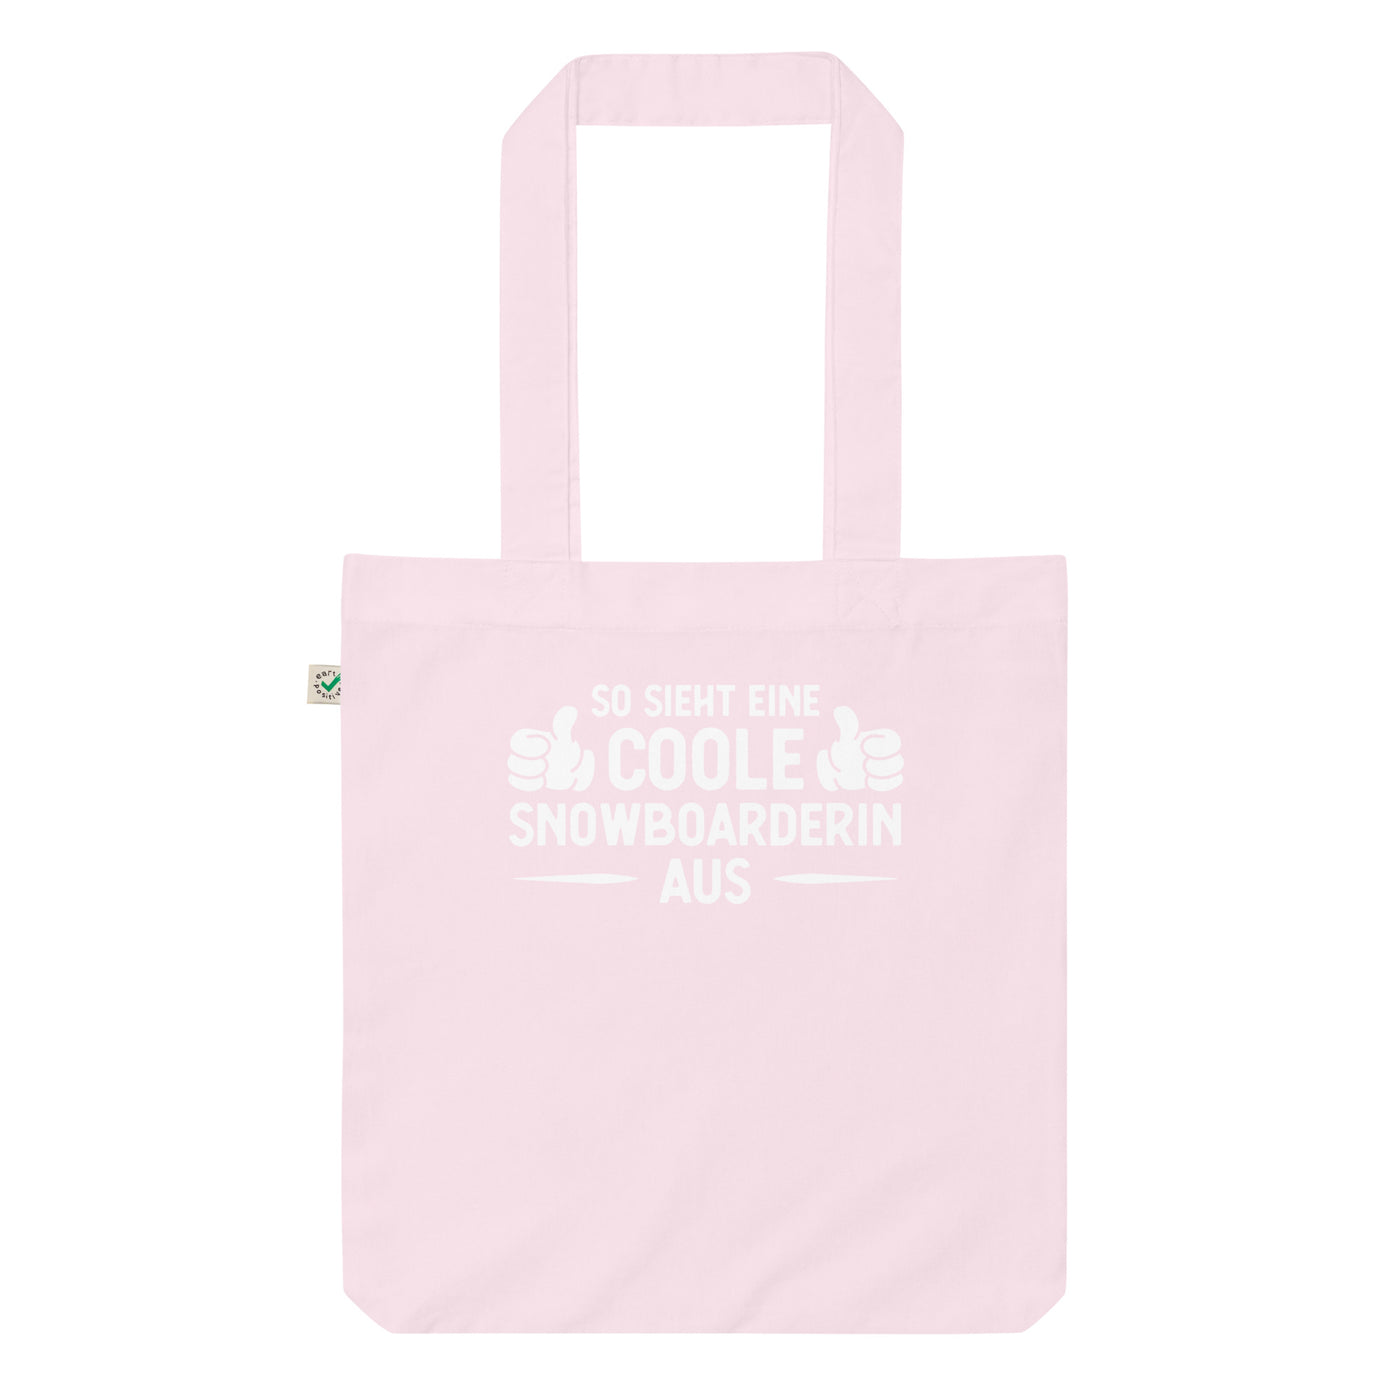 So Sieht Eine Coole Snowboarderin Aus - Organic Einkaufstasche snowboarden Candy Pink